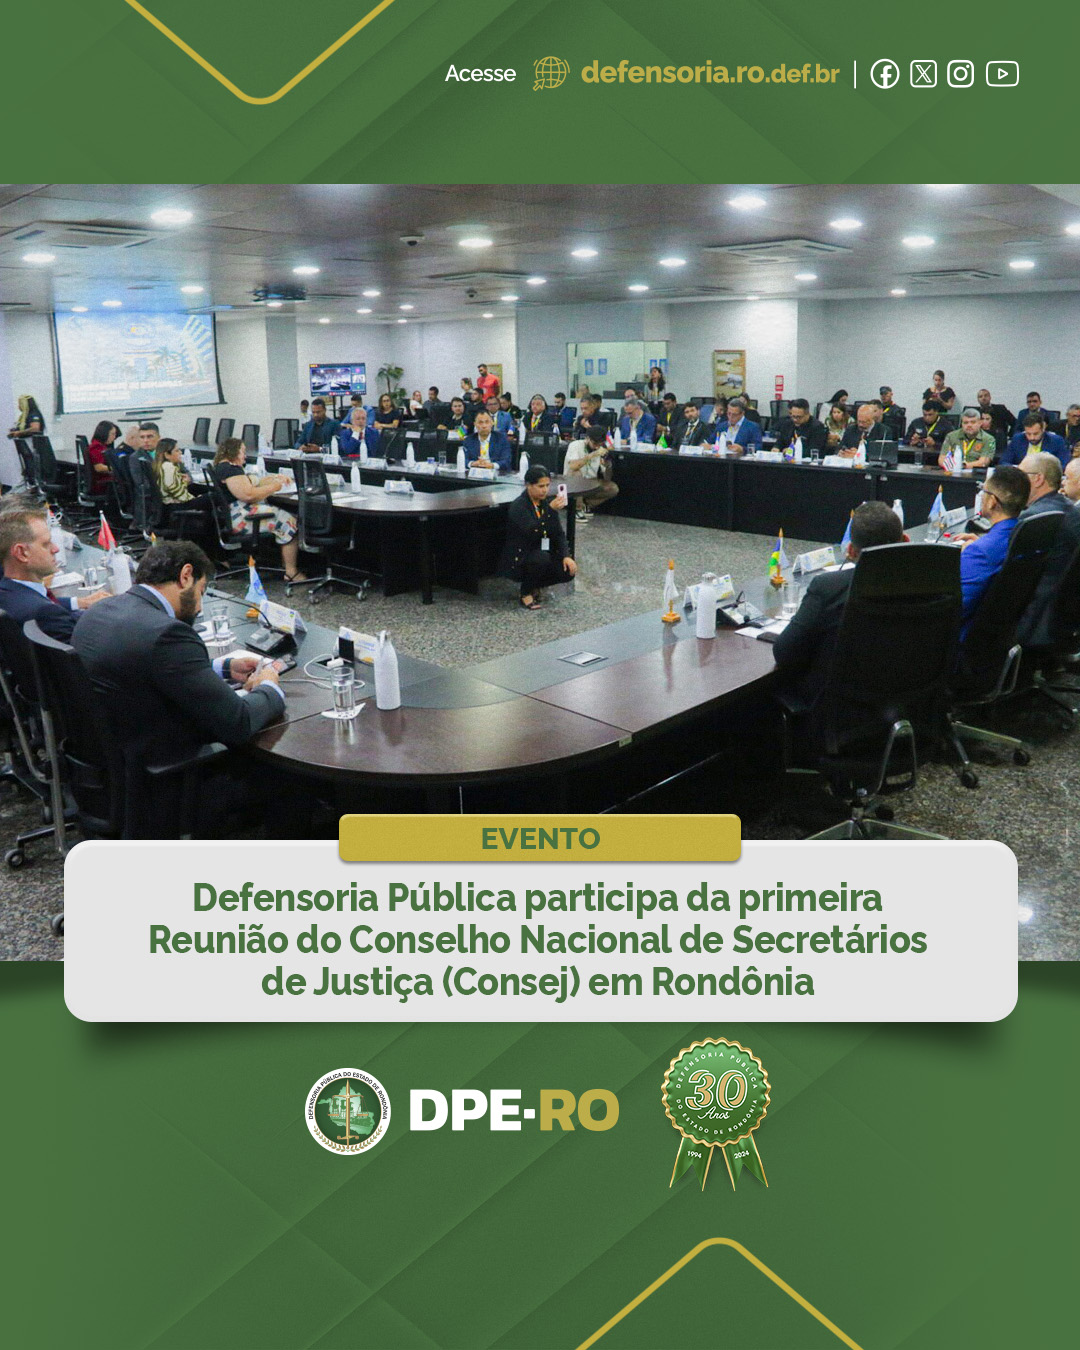 Defensoria Pública participa da primeira Reunião do Conselho Nacional de Secretários de Justiça (Consej) em Rondônia